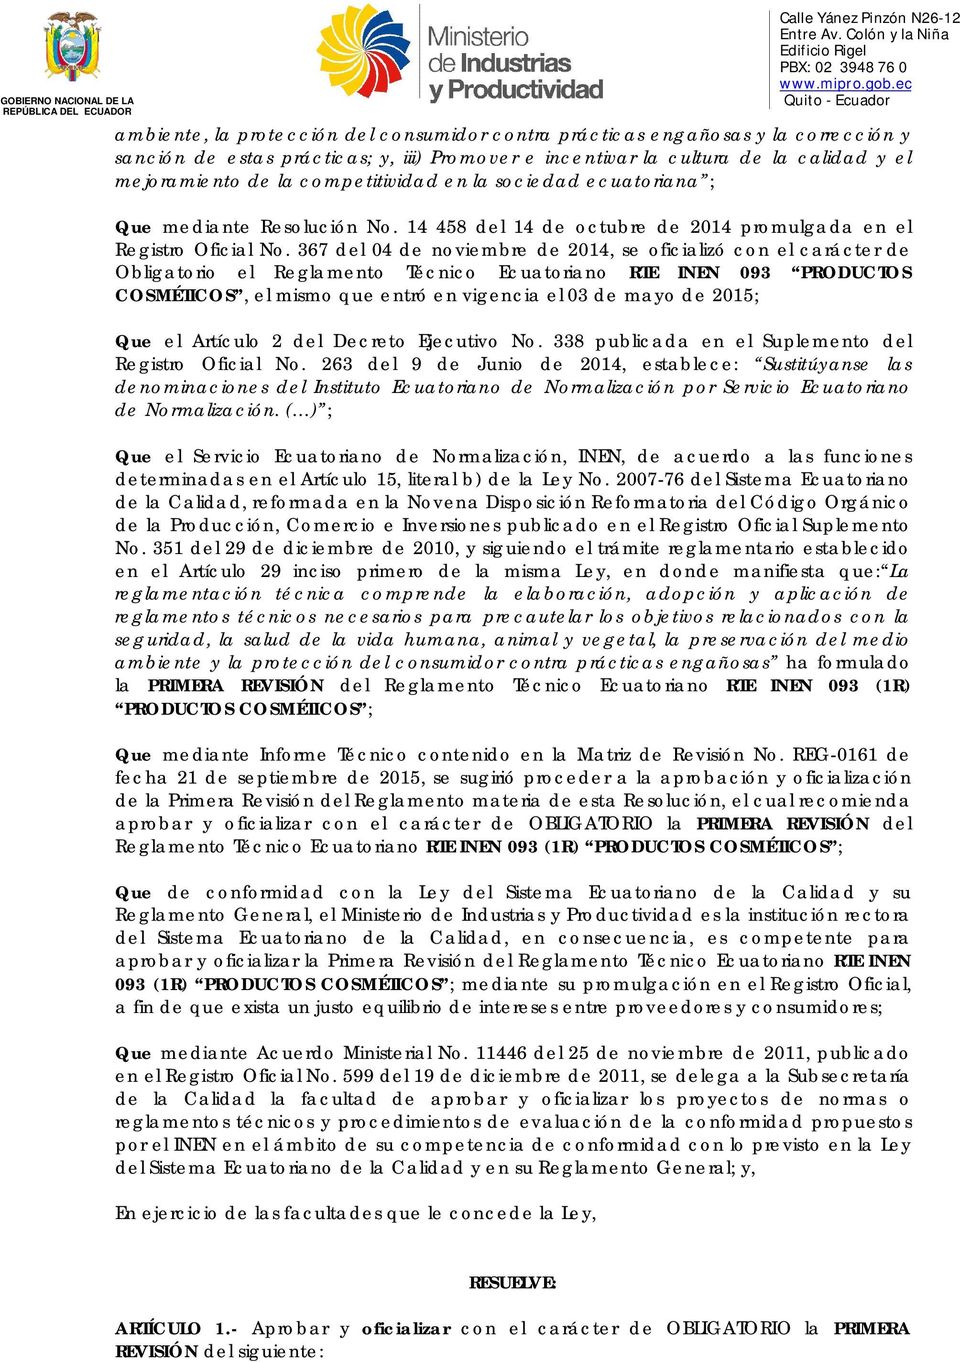 367 del 04 de noviembre de 2014, se oficializó con el carácter de Obligatorio el Reglamento Técnico Ecuatoriano RTE INEN 093 PRODUCTOS COSMÉTICOS, el mismo que entró en vigencia el 03 de mayo de